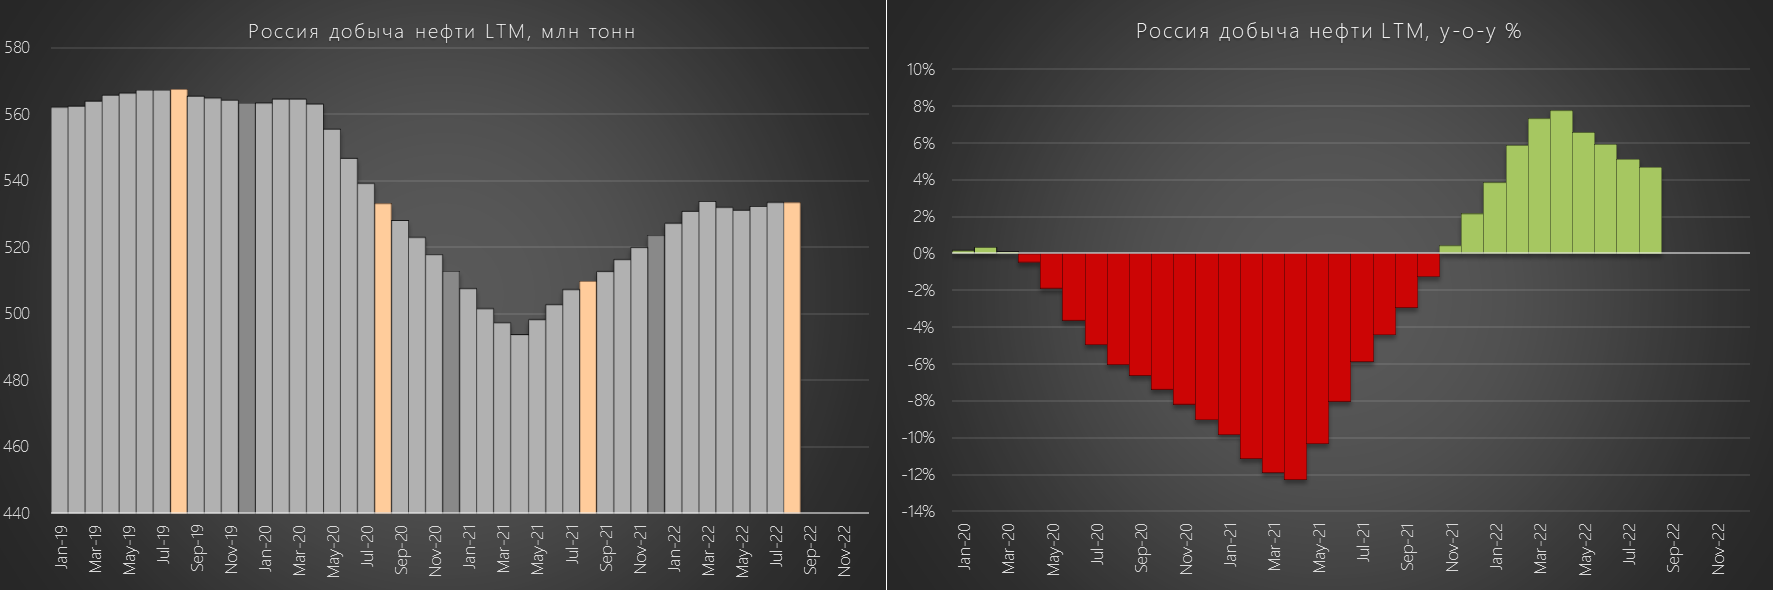 RAZB0RKA данных по добыче Нефти в РФ и расчет выручки от экспорта - Июль 2022